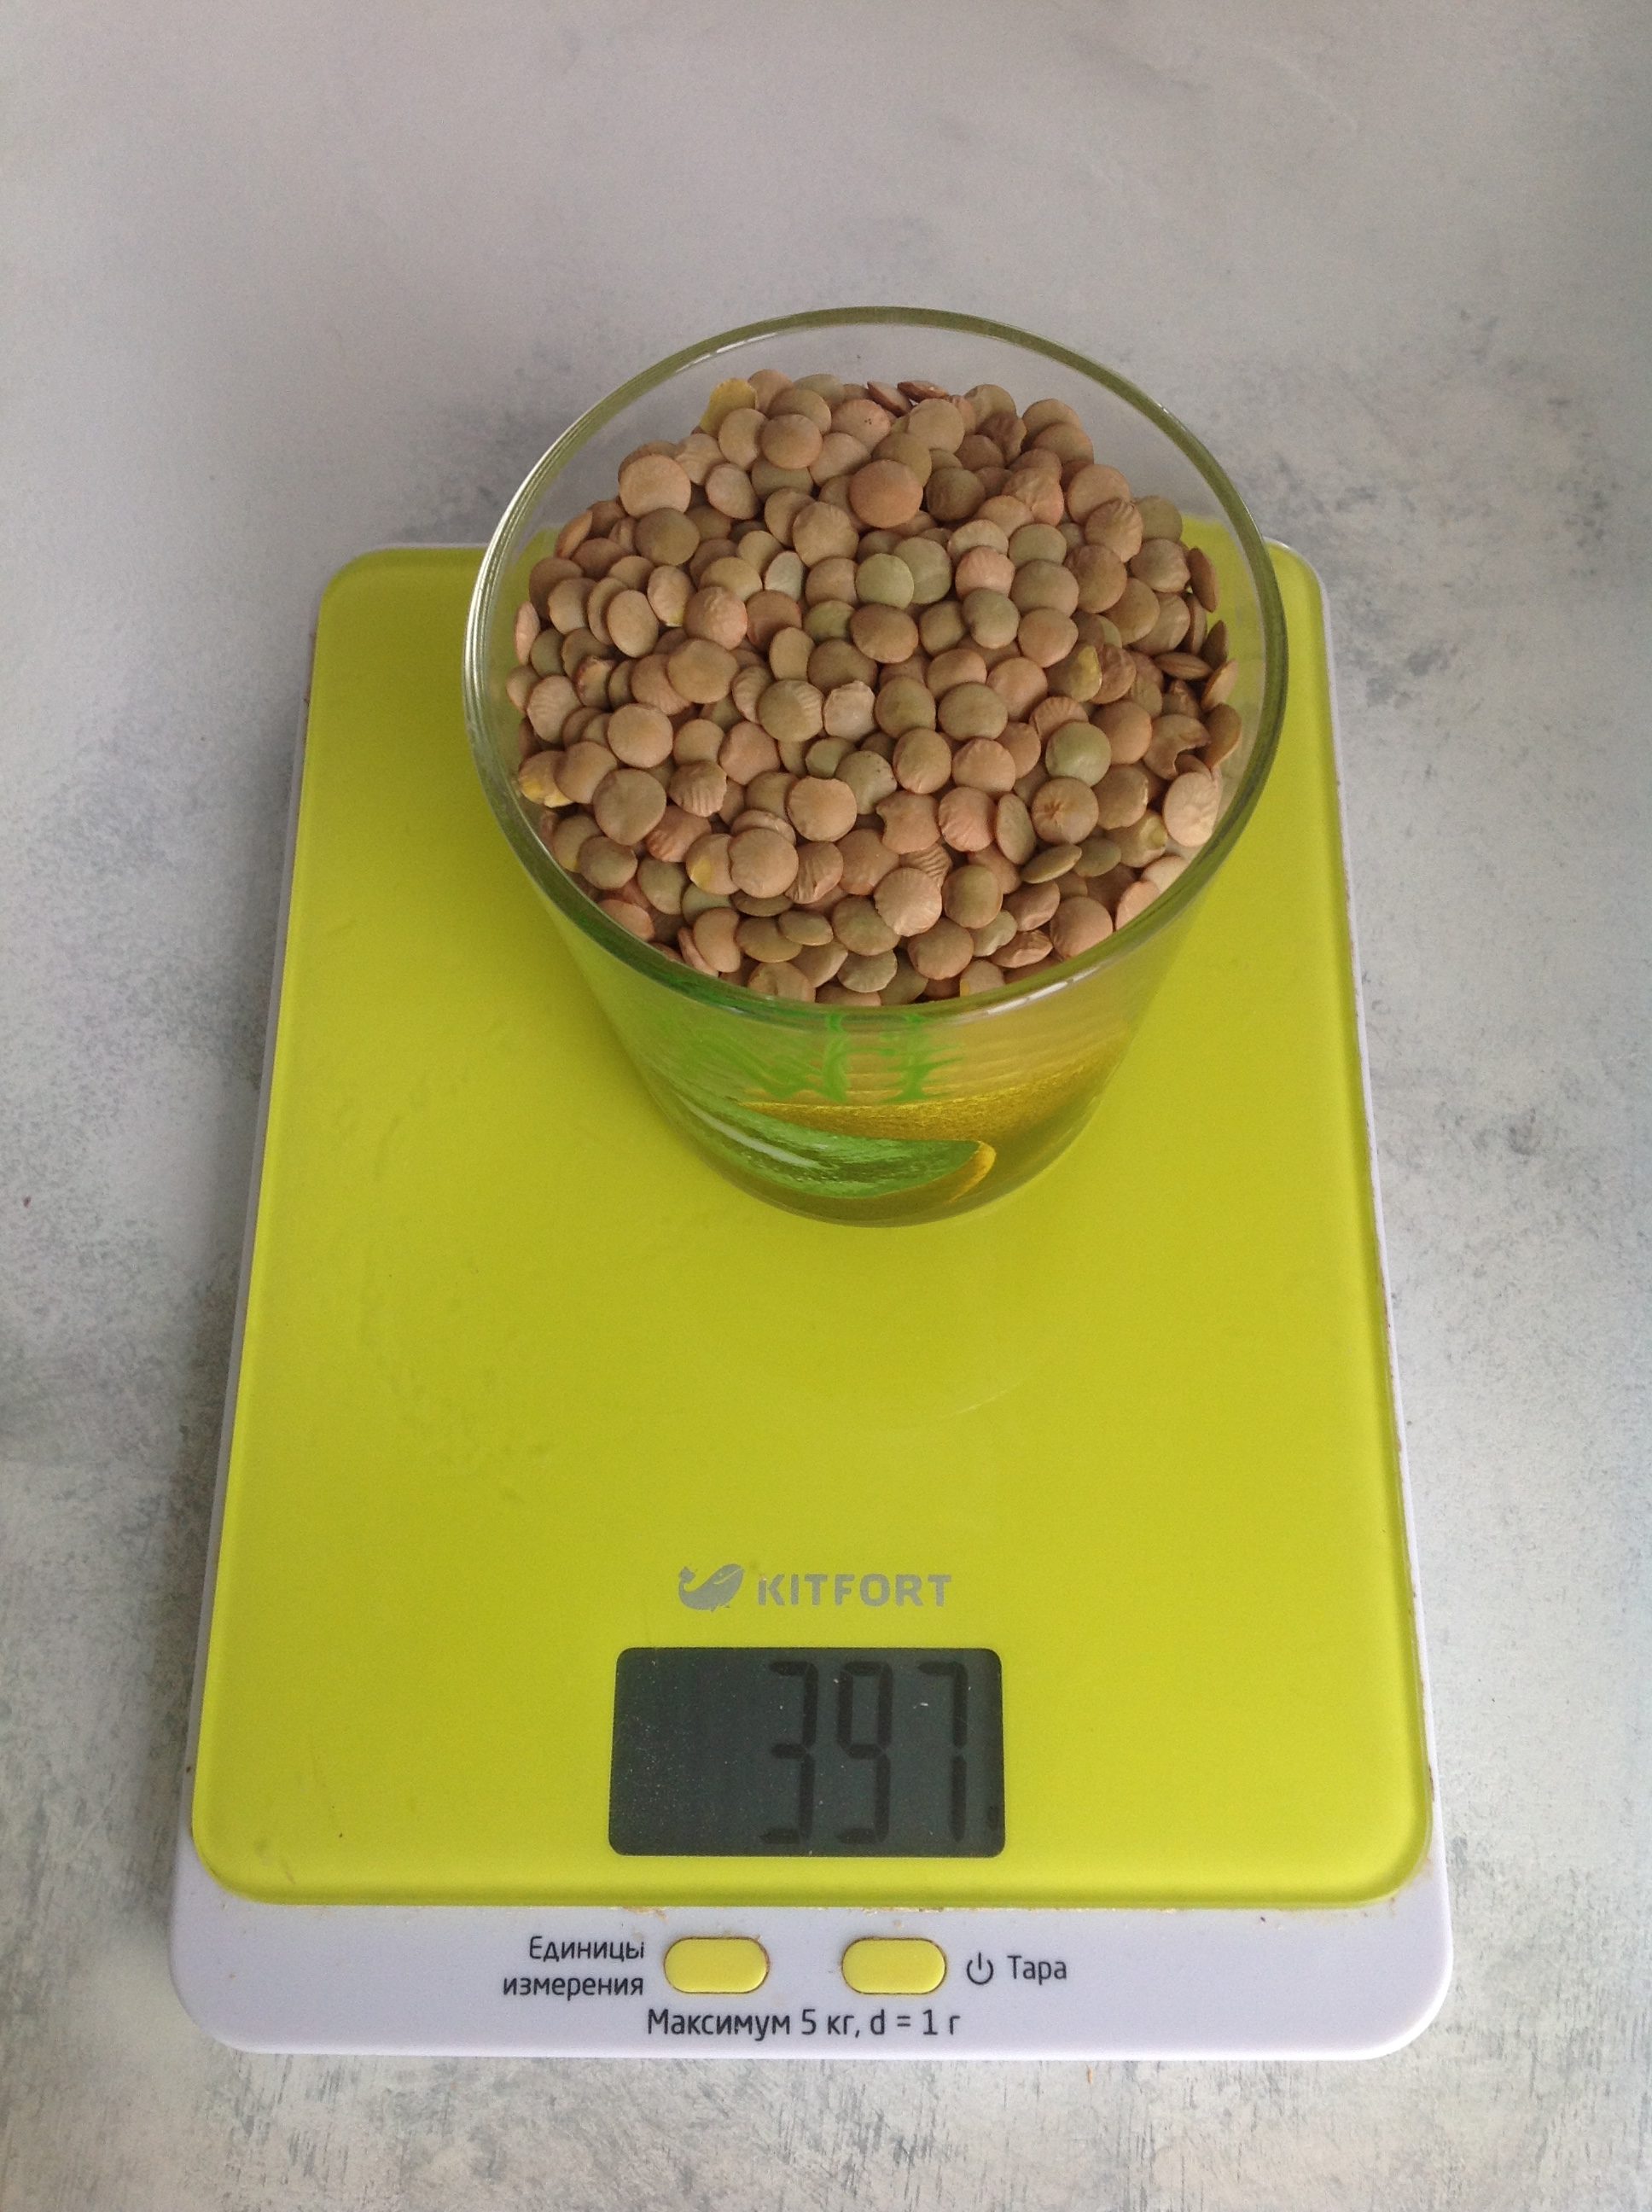 250 毫升玻璃杯中的干扁豆重量